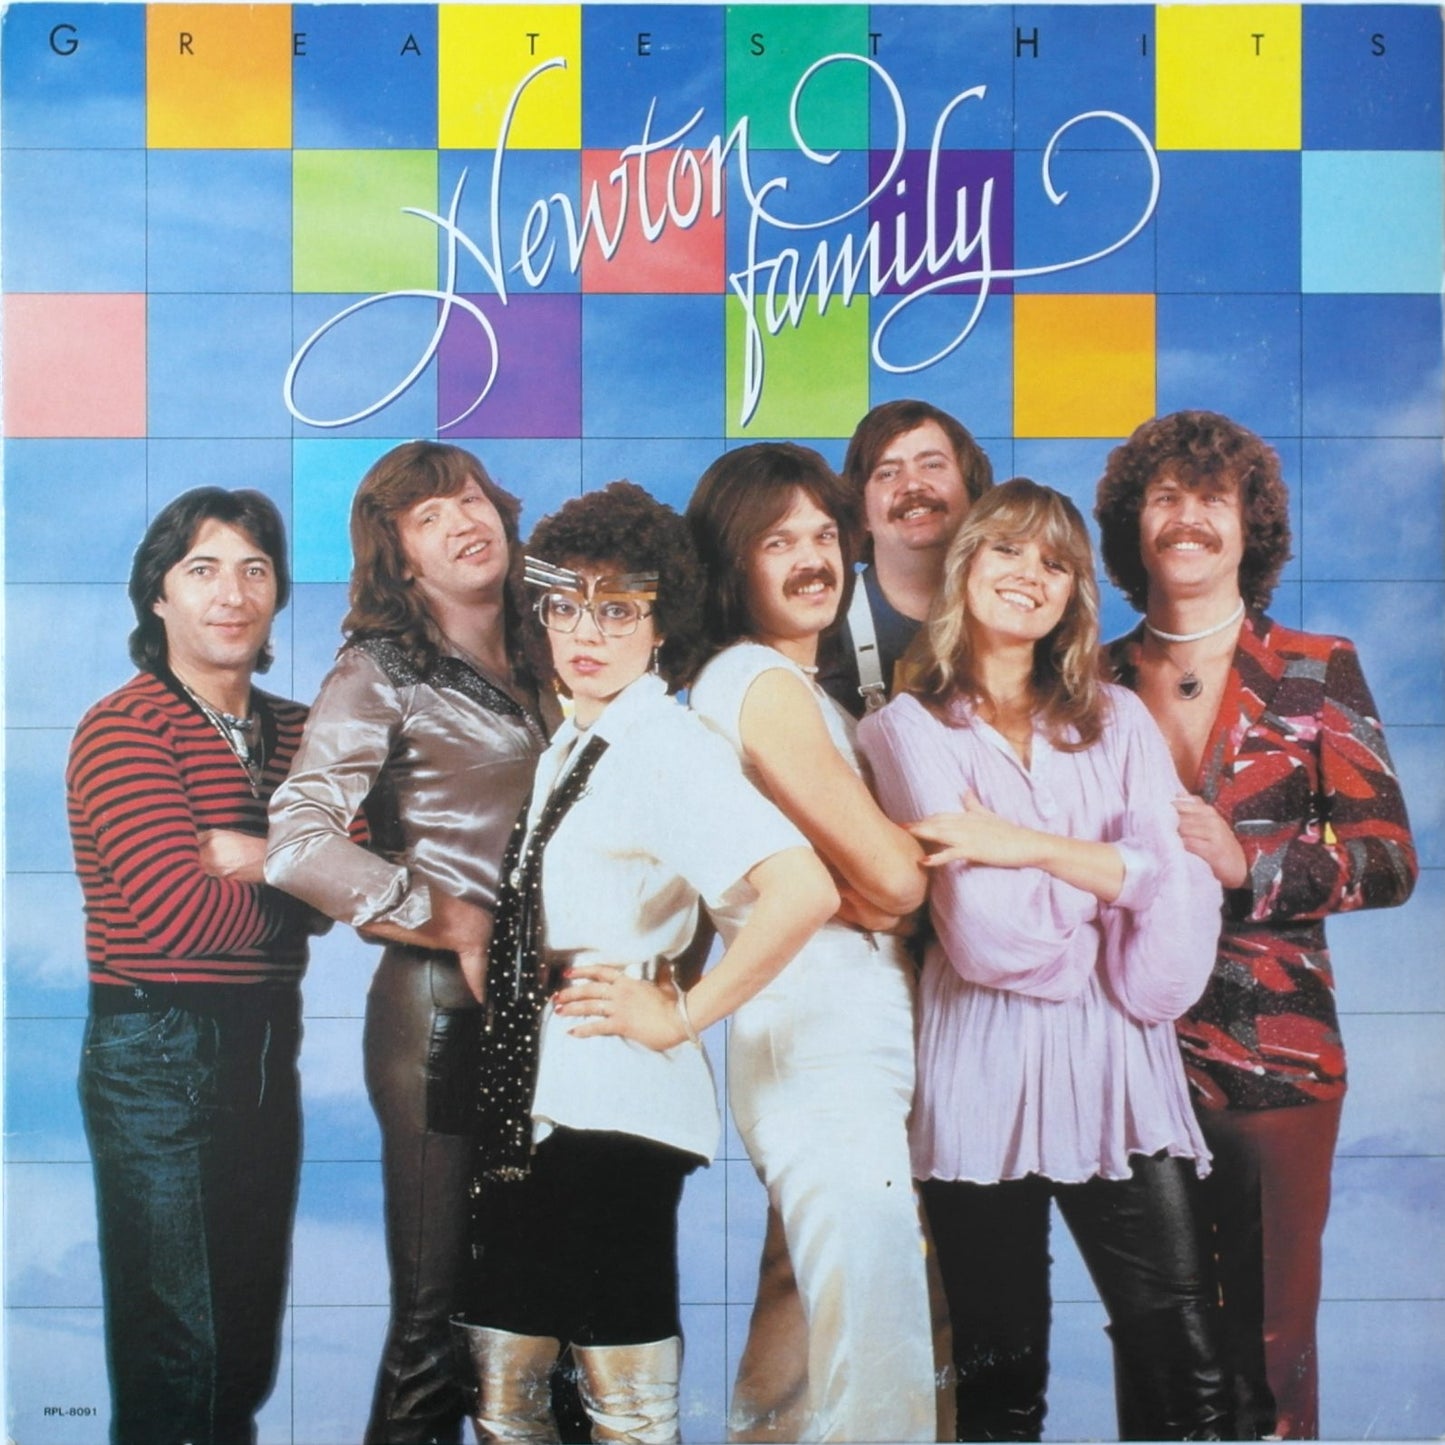 NEWTON FAMILY - Greatest Hits